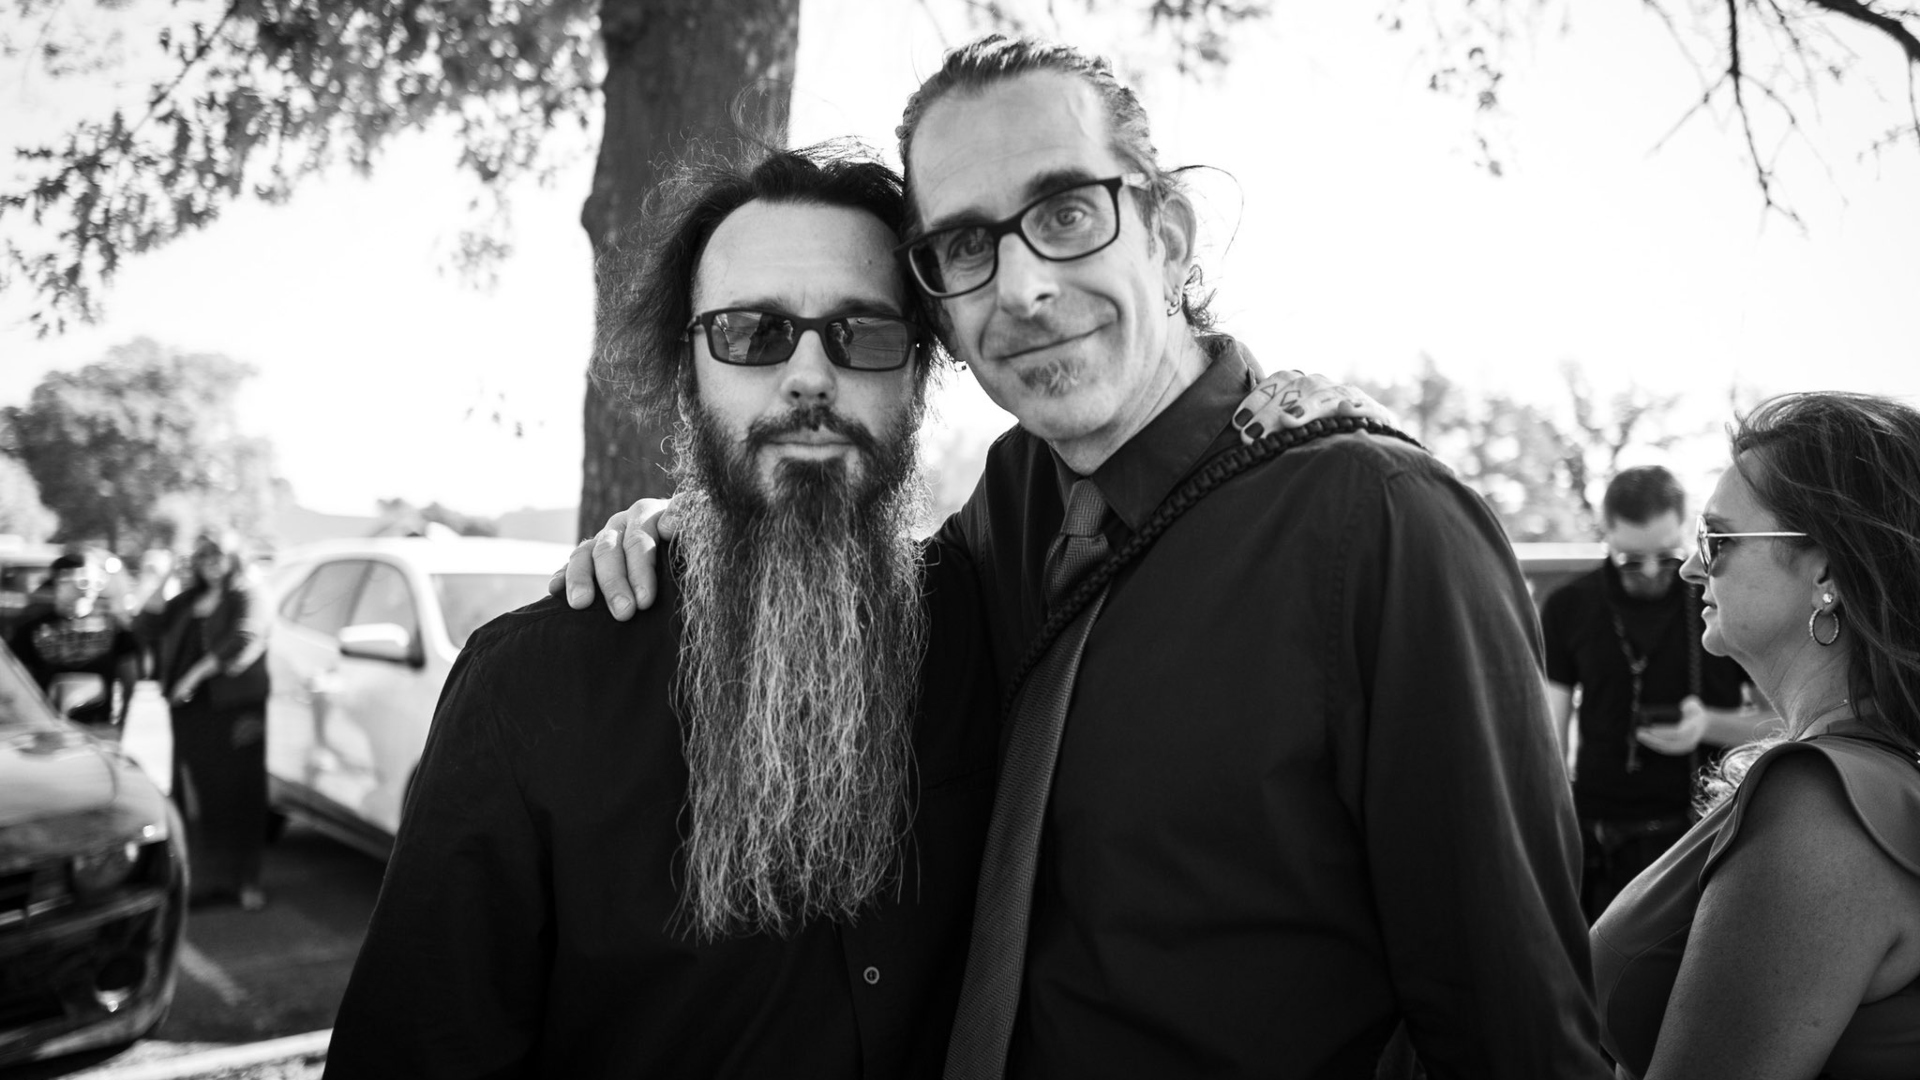 Damien Echols en compañía de Randy Blythe, vocalista de Lamb of God, una de las tantas bandas que a lo largo de las décadas han mostrado su apoyo a los acusados. (Foto: Twitter/@damienechols)